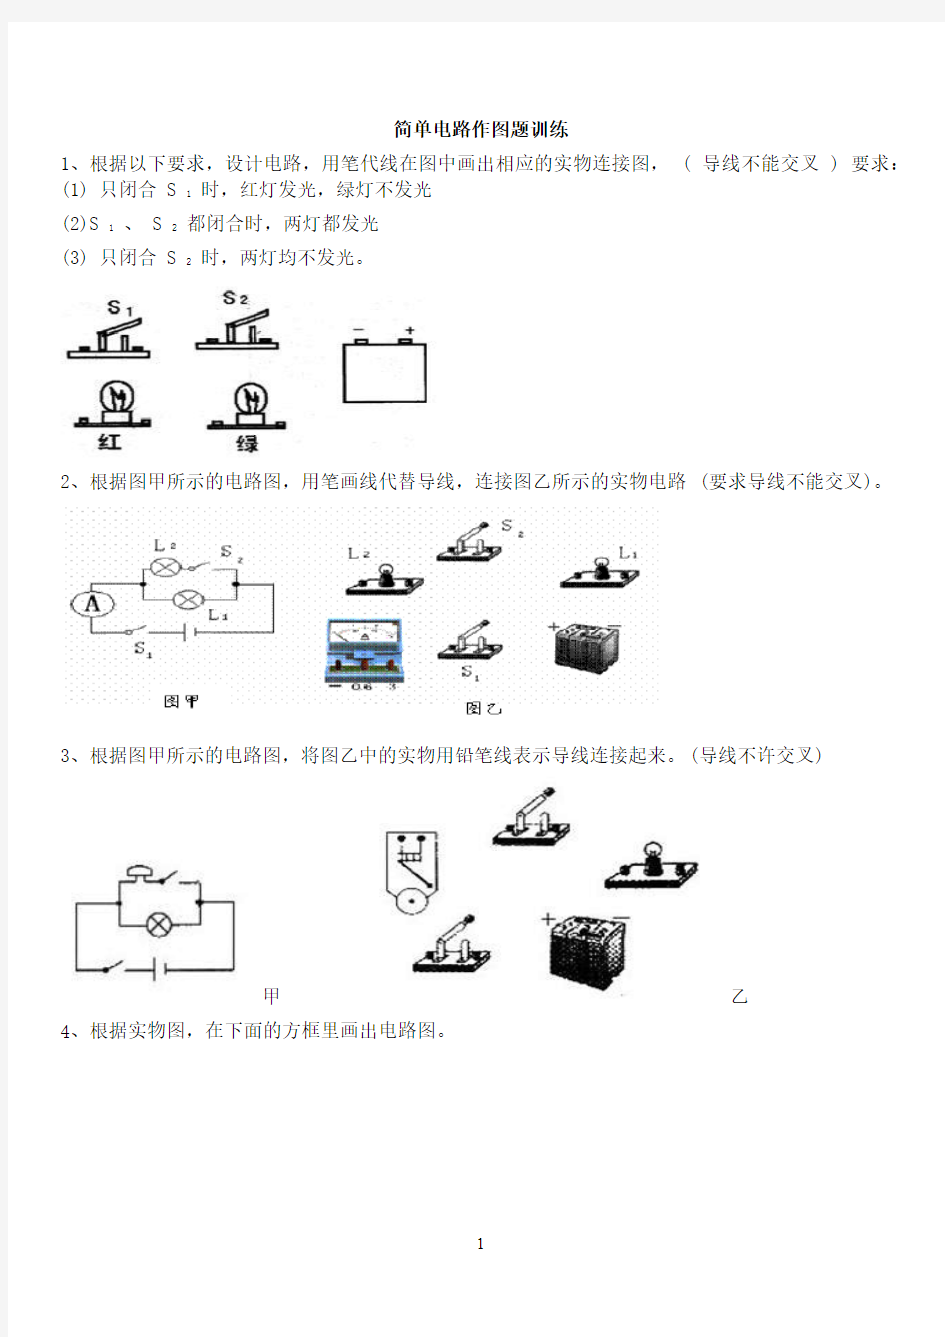 简单电路作图题训练(2020年10月整理).pdf